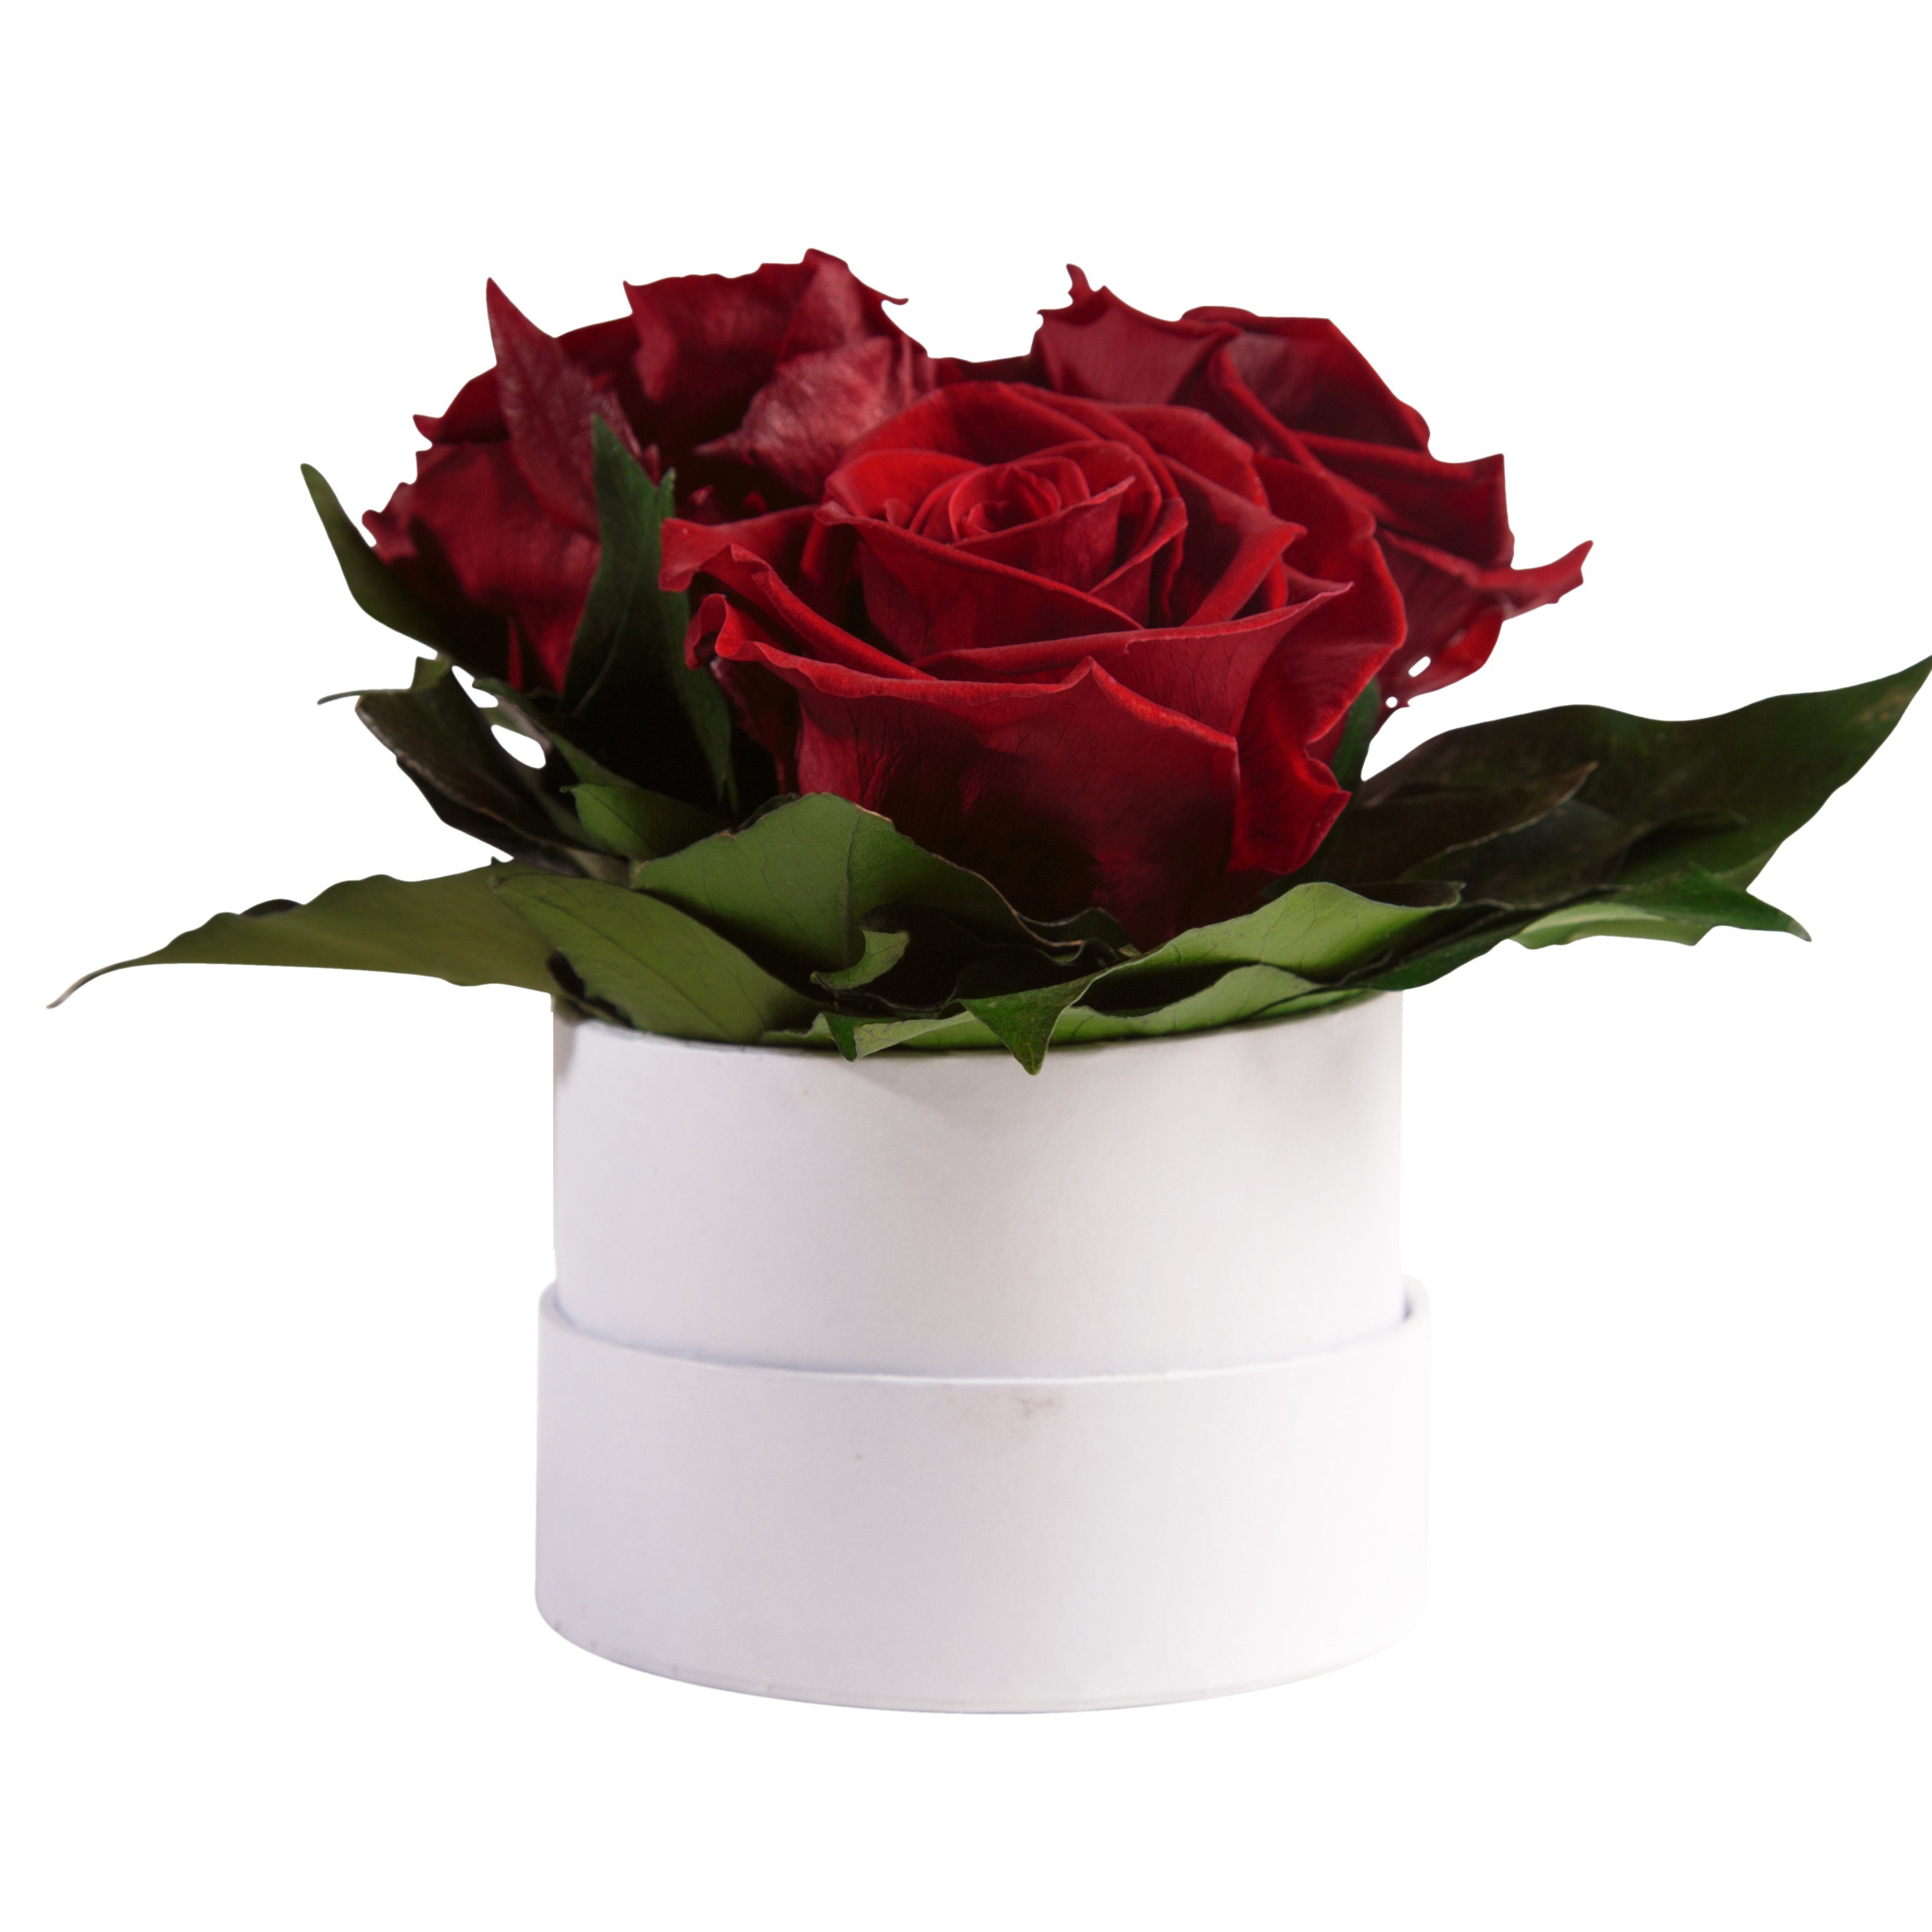 Kunstblume Infinity Rosenbox weiß rund 3 echte Rosen konserviert Rose, ROSEMARIE SCHULZ Heidelberg, Höhe 10 cm, Geschenk für Sie Rosen Dunkelrot